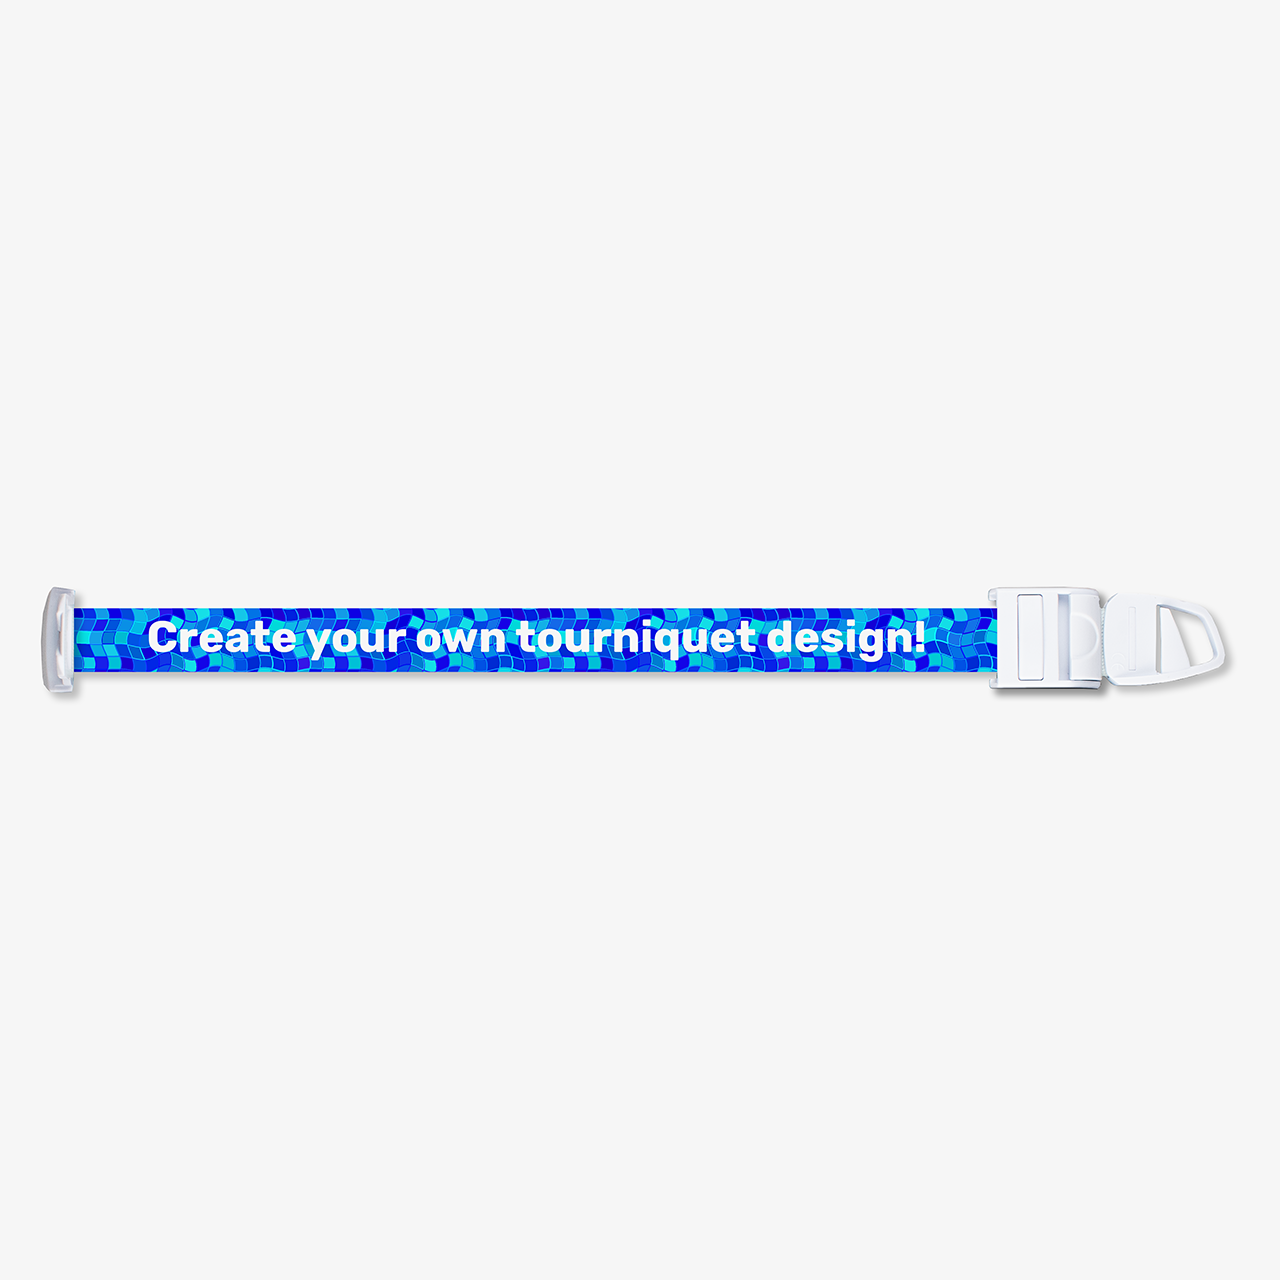 Tourniquet Creator - Design your own unique medical tourniquet